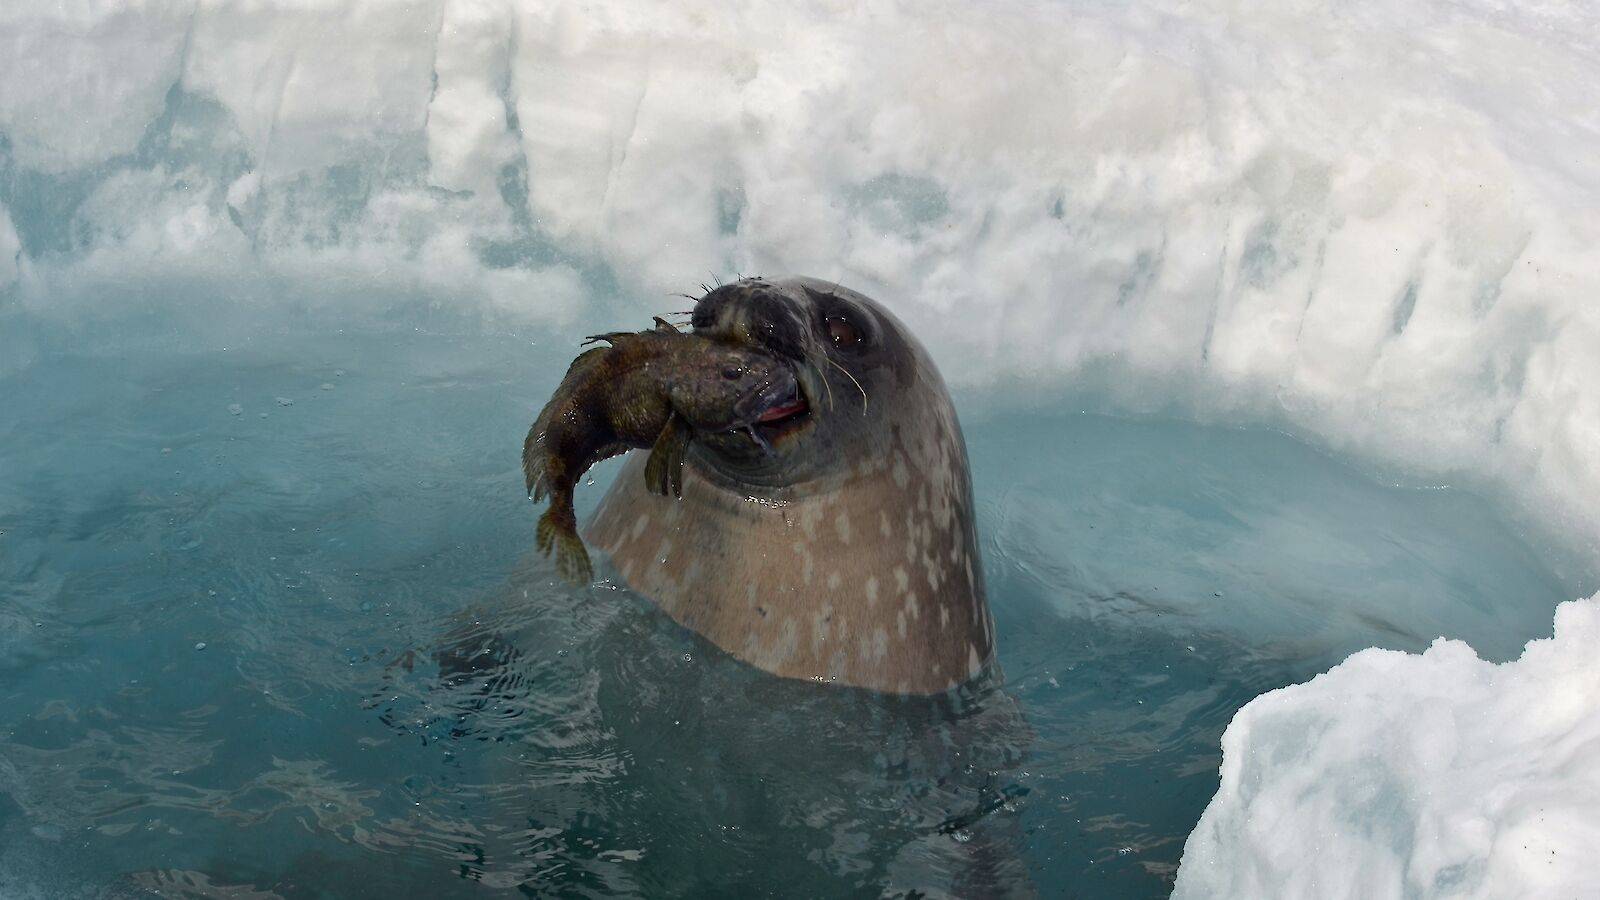 Сообщение о тюлене - описание, виды и среда обитания